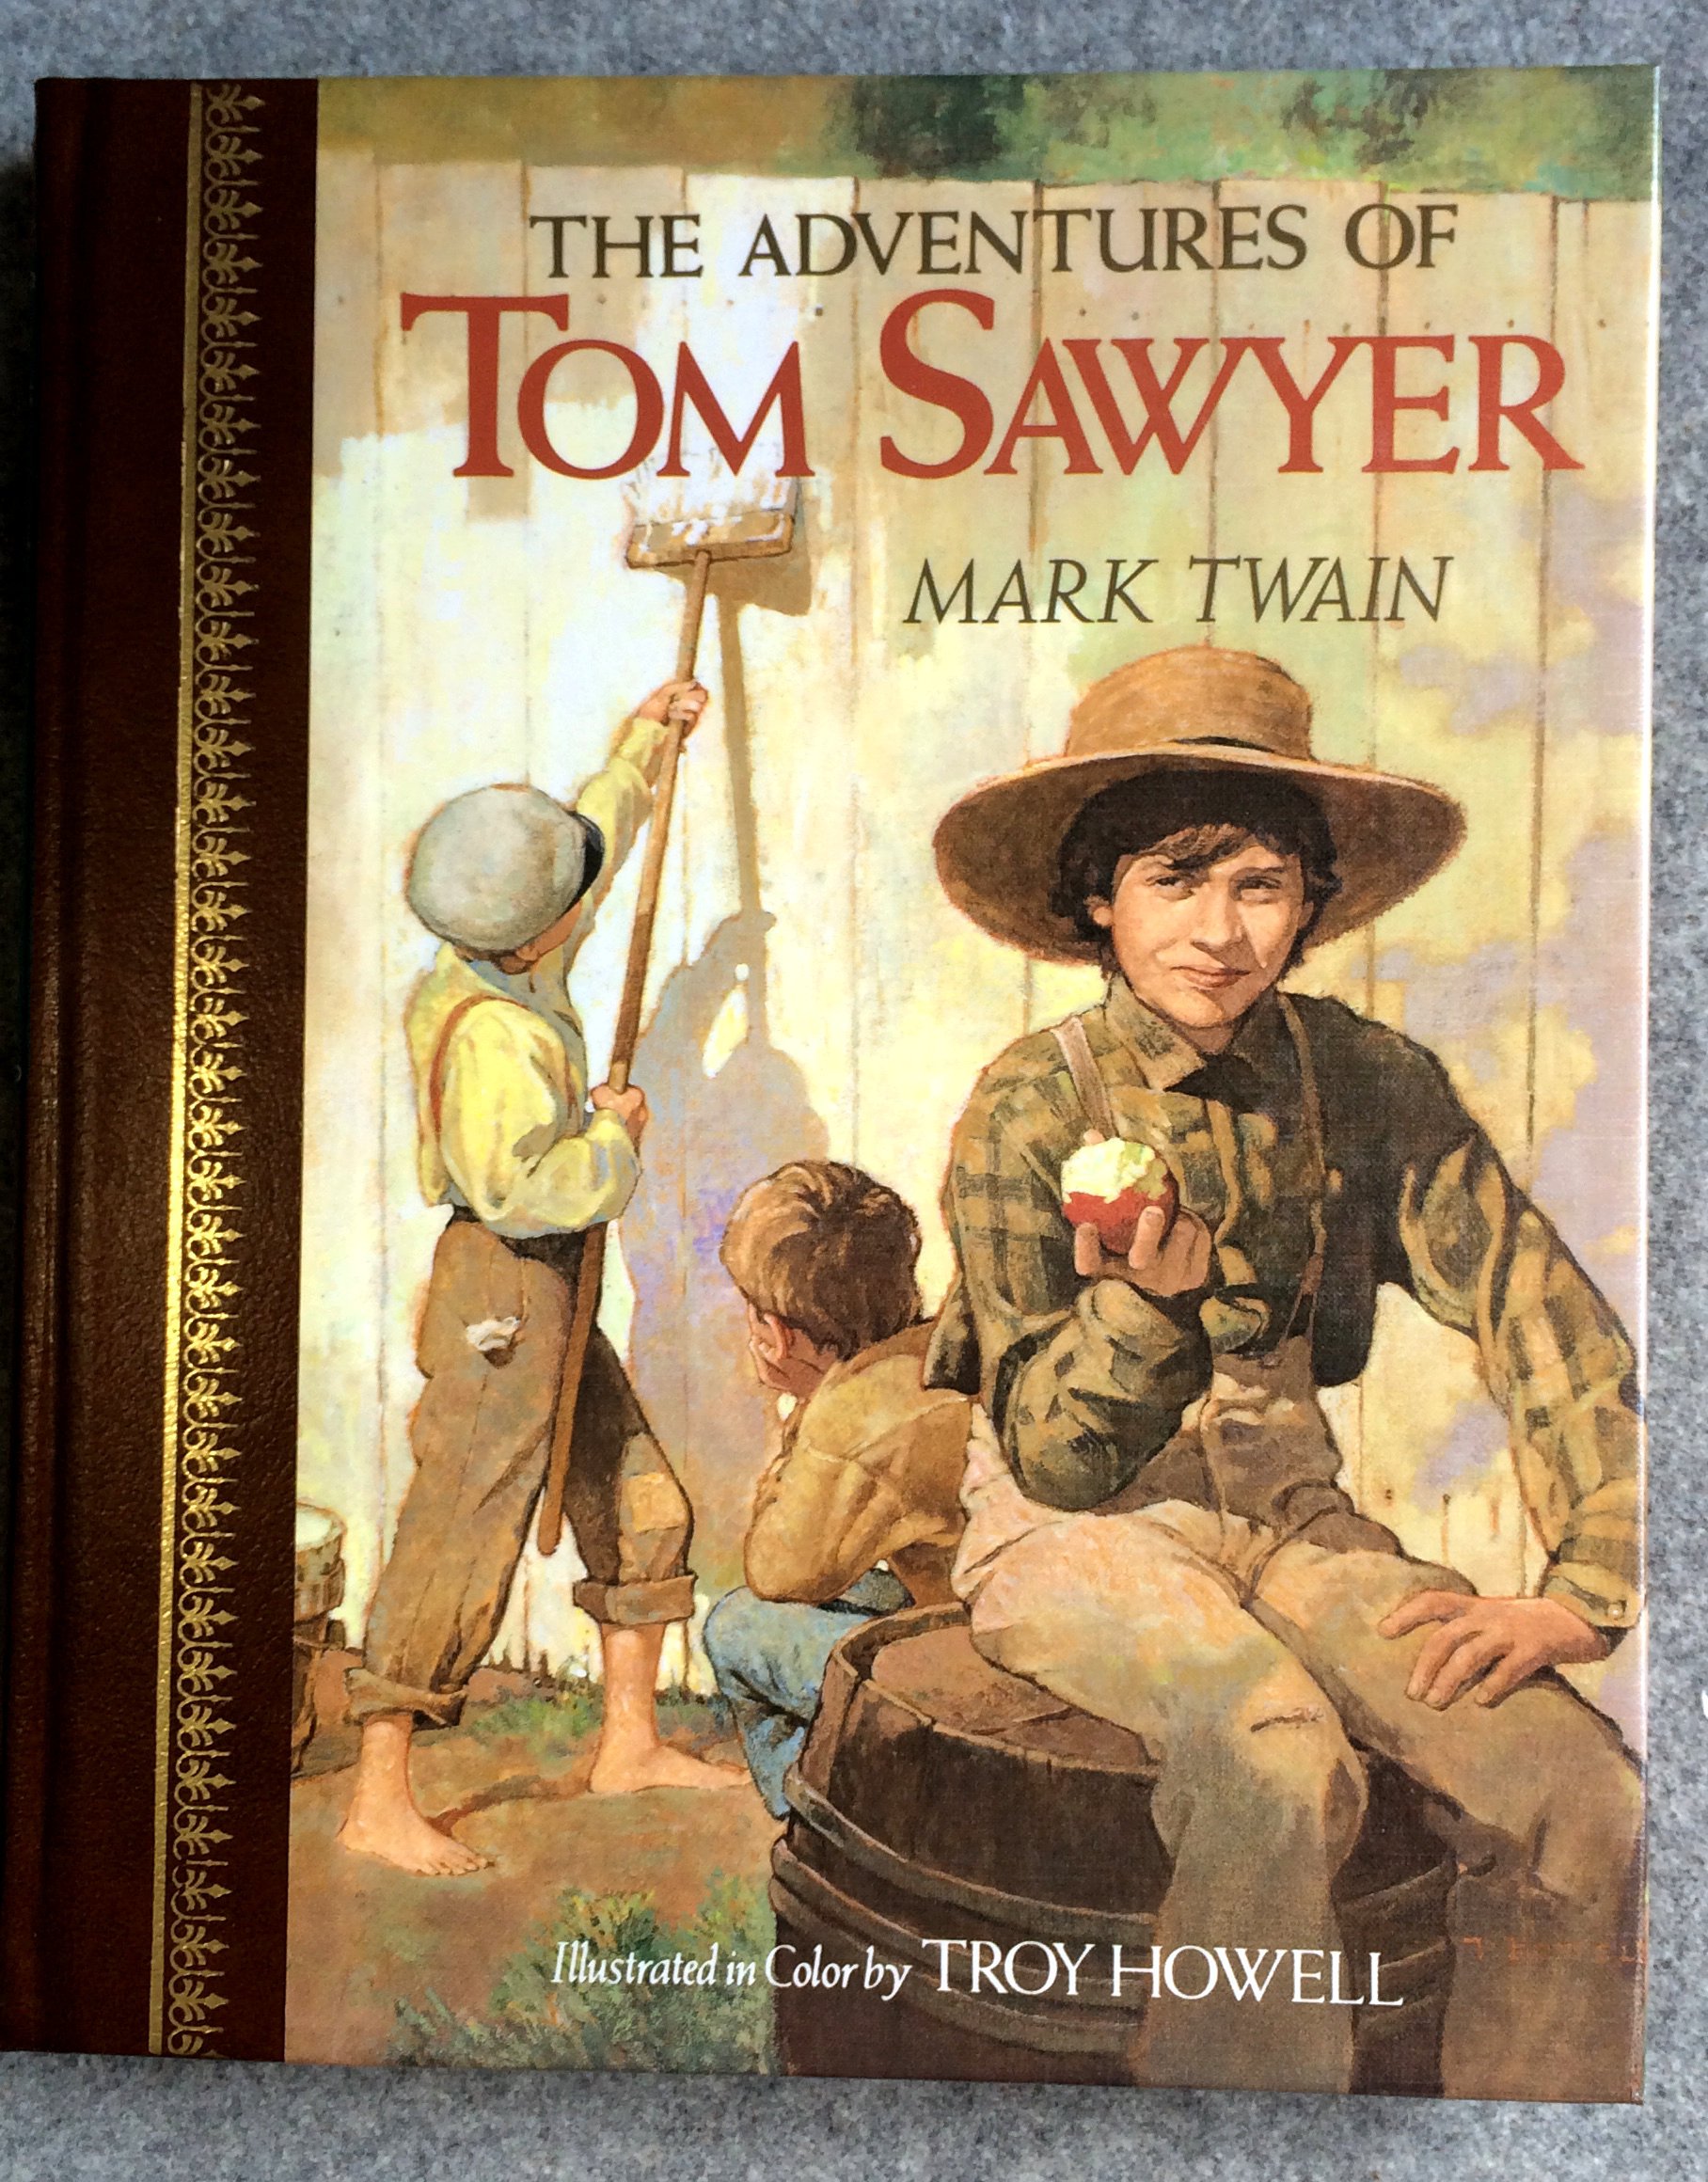 Приключения тома сойера на английском. Приключения тамасоера. Приключения Тома Сойера / the Adventures of Tom Sawyer. Mark Twain Tom Sawyer. Приключения Тома Сойера на англ.